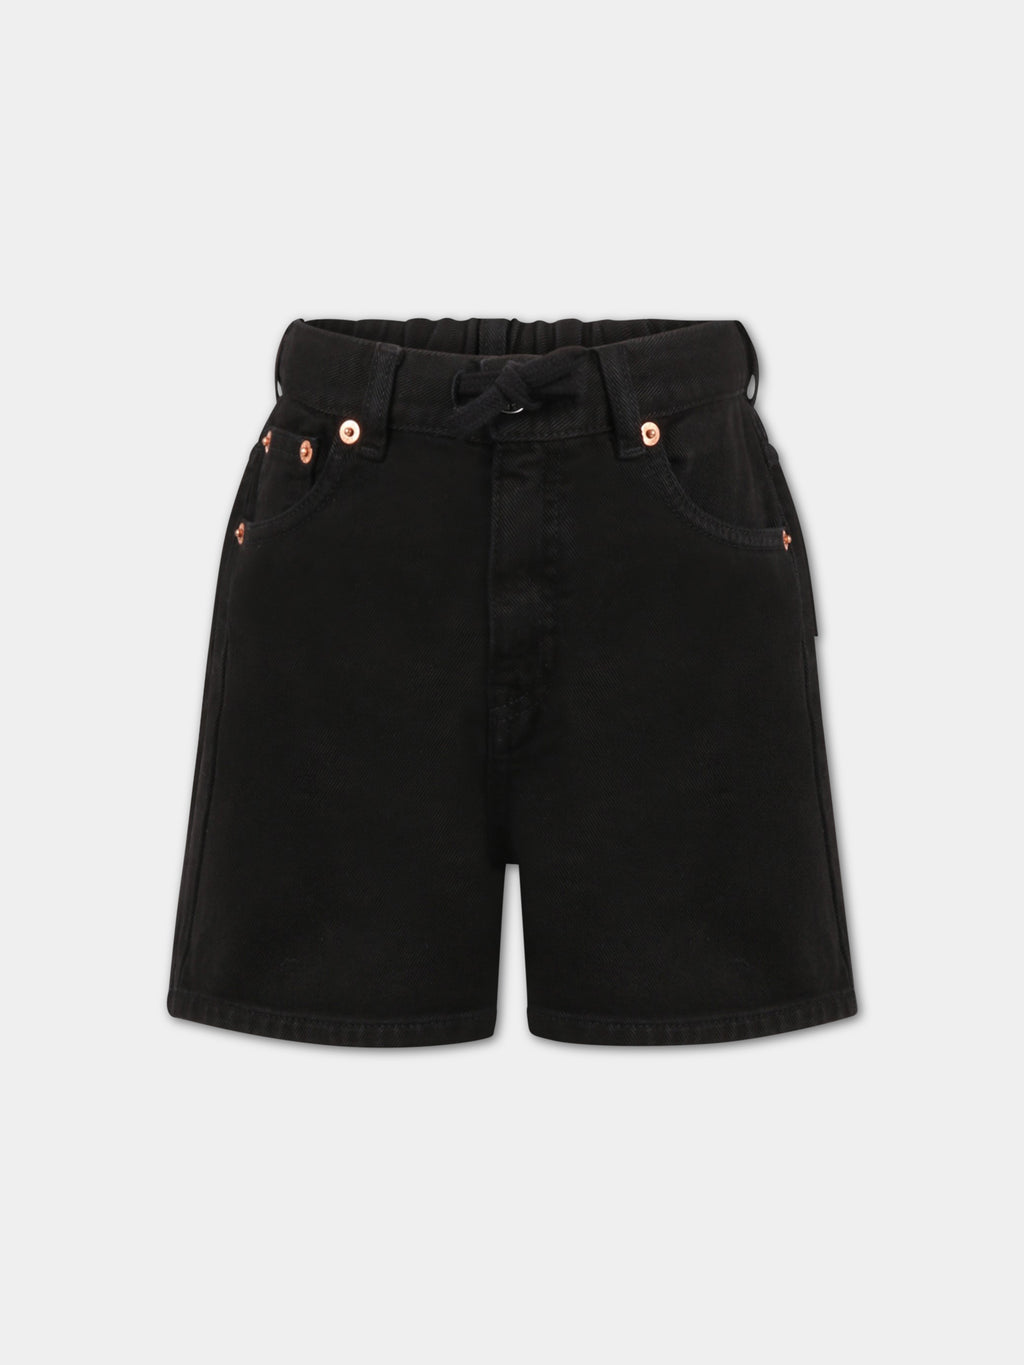 Black shorts for girl